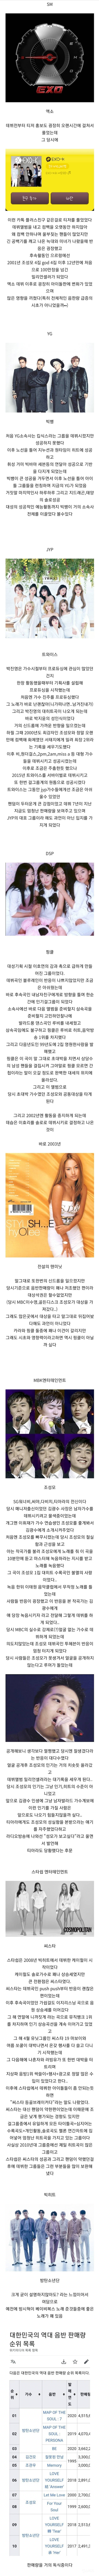 한국 유명 아이돌 소속사에 큰영향을 끼친 대표 가수들...jpg | 인스티즈